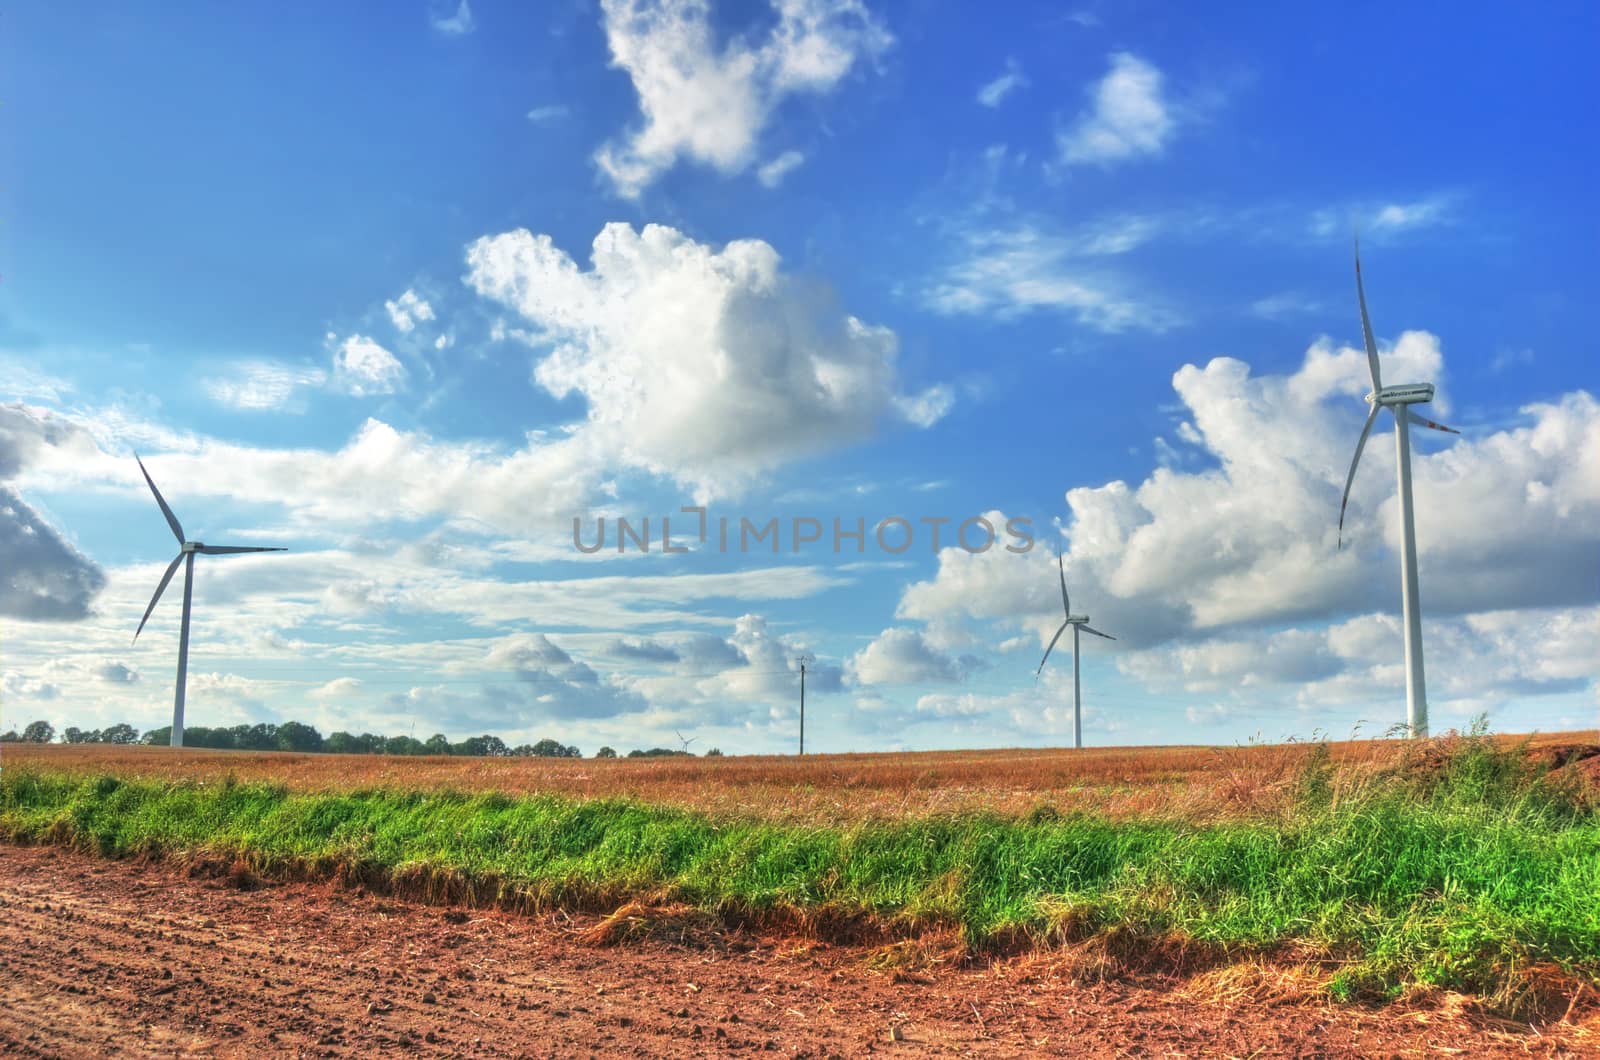 Windmills on the green field.